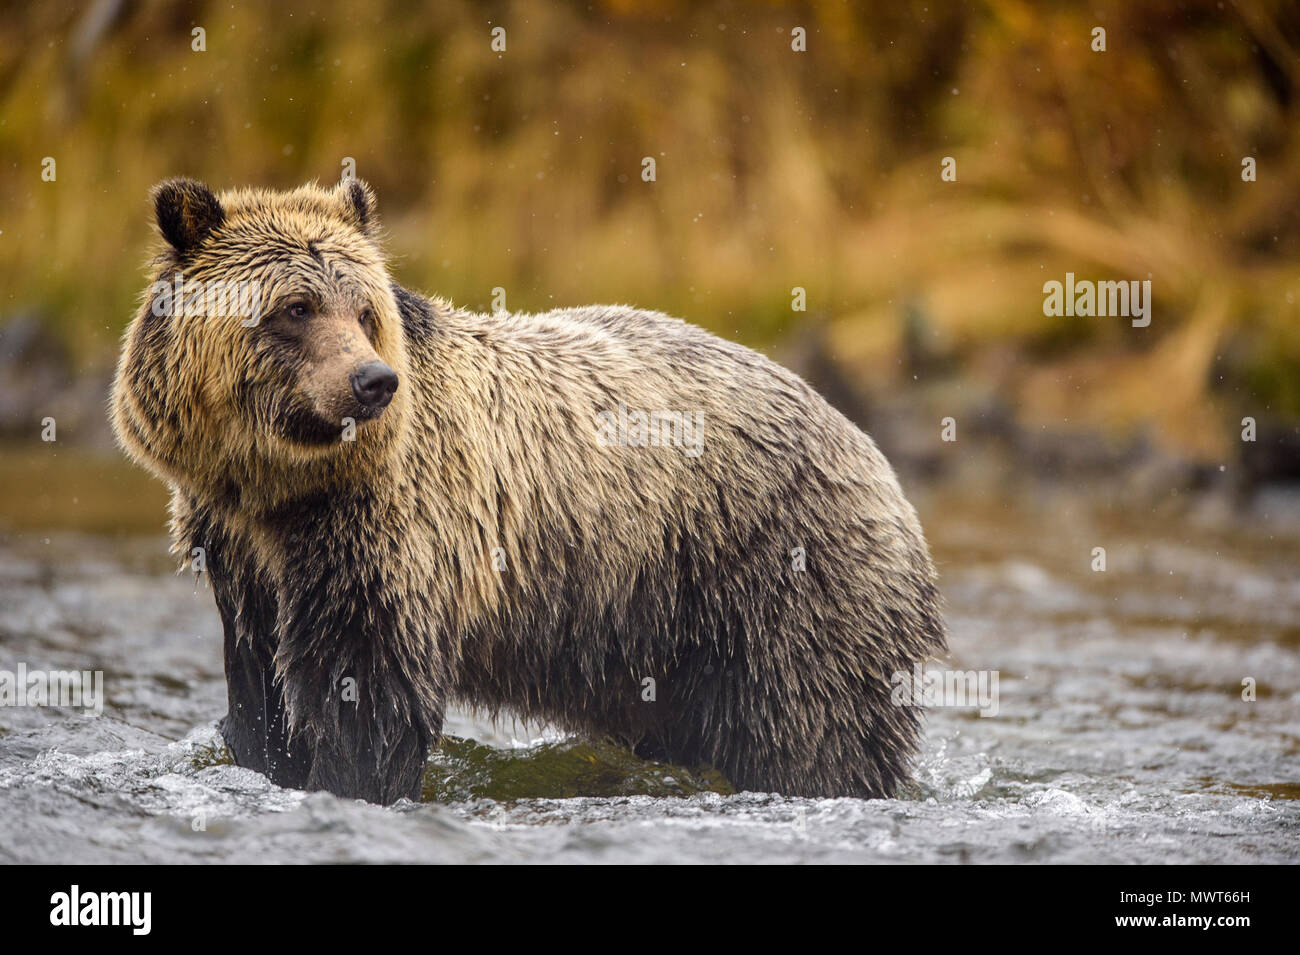 Ours grizzli (Ursus arctos) saumon sockeye fraye de chasse sur une rivière pendant la saison de frai, Chilcotin Wilderness, Colombie-Britannique BC, Canada Banque D'Images